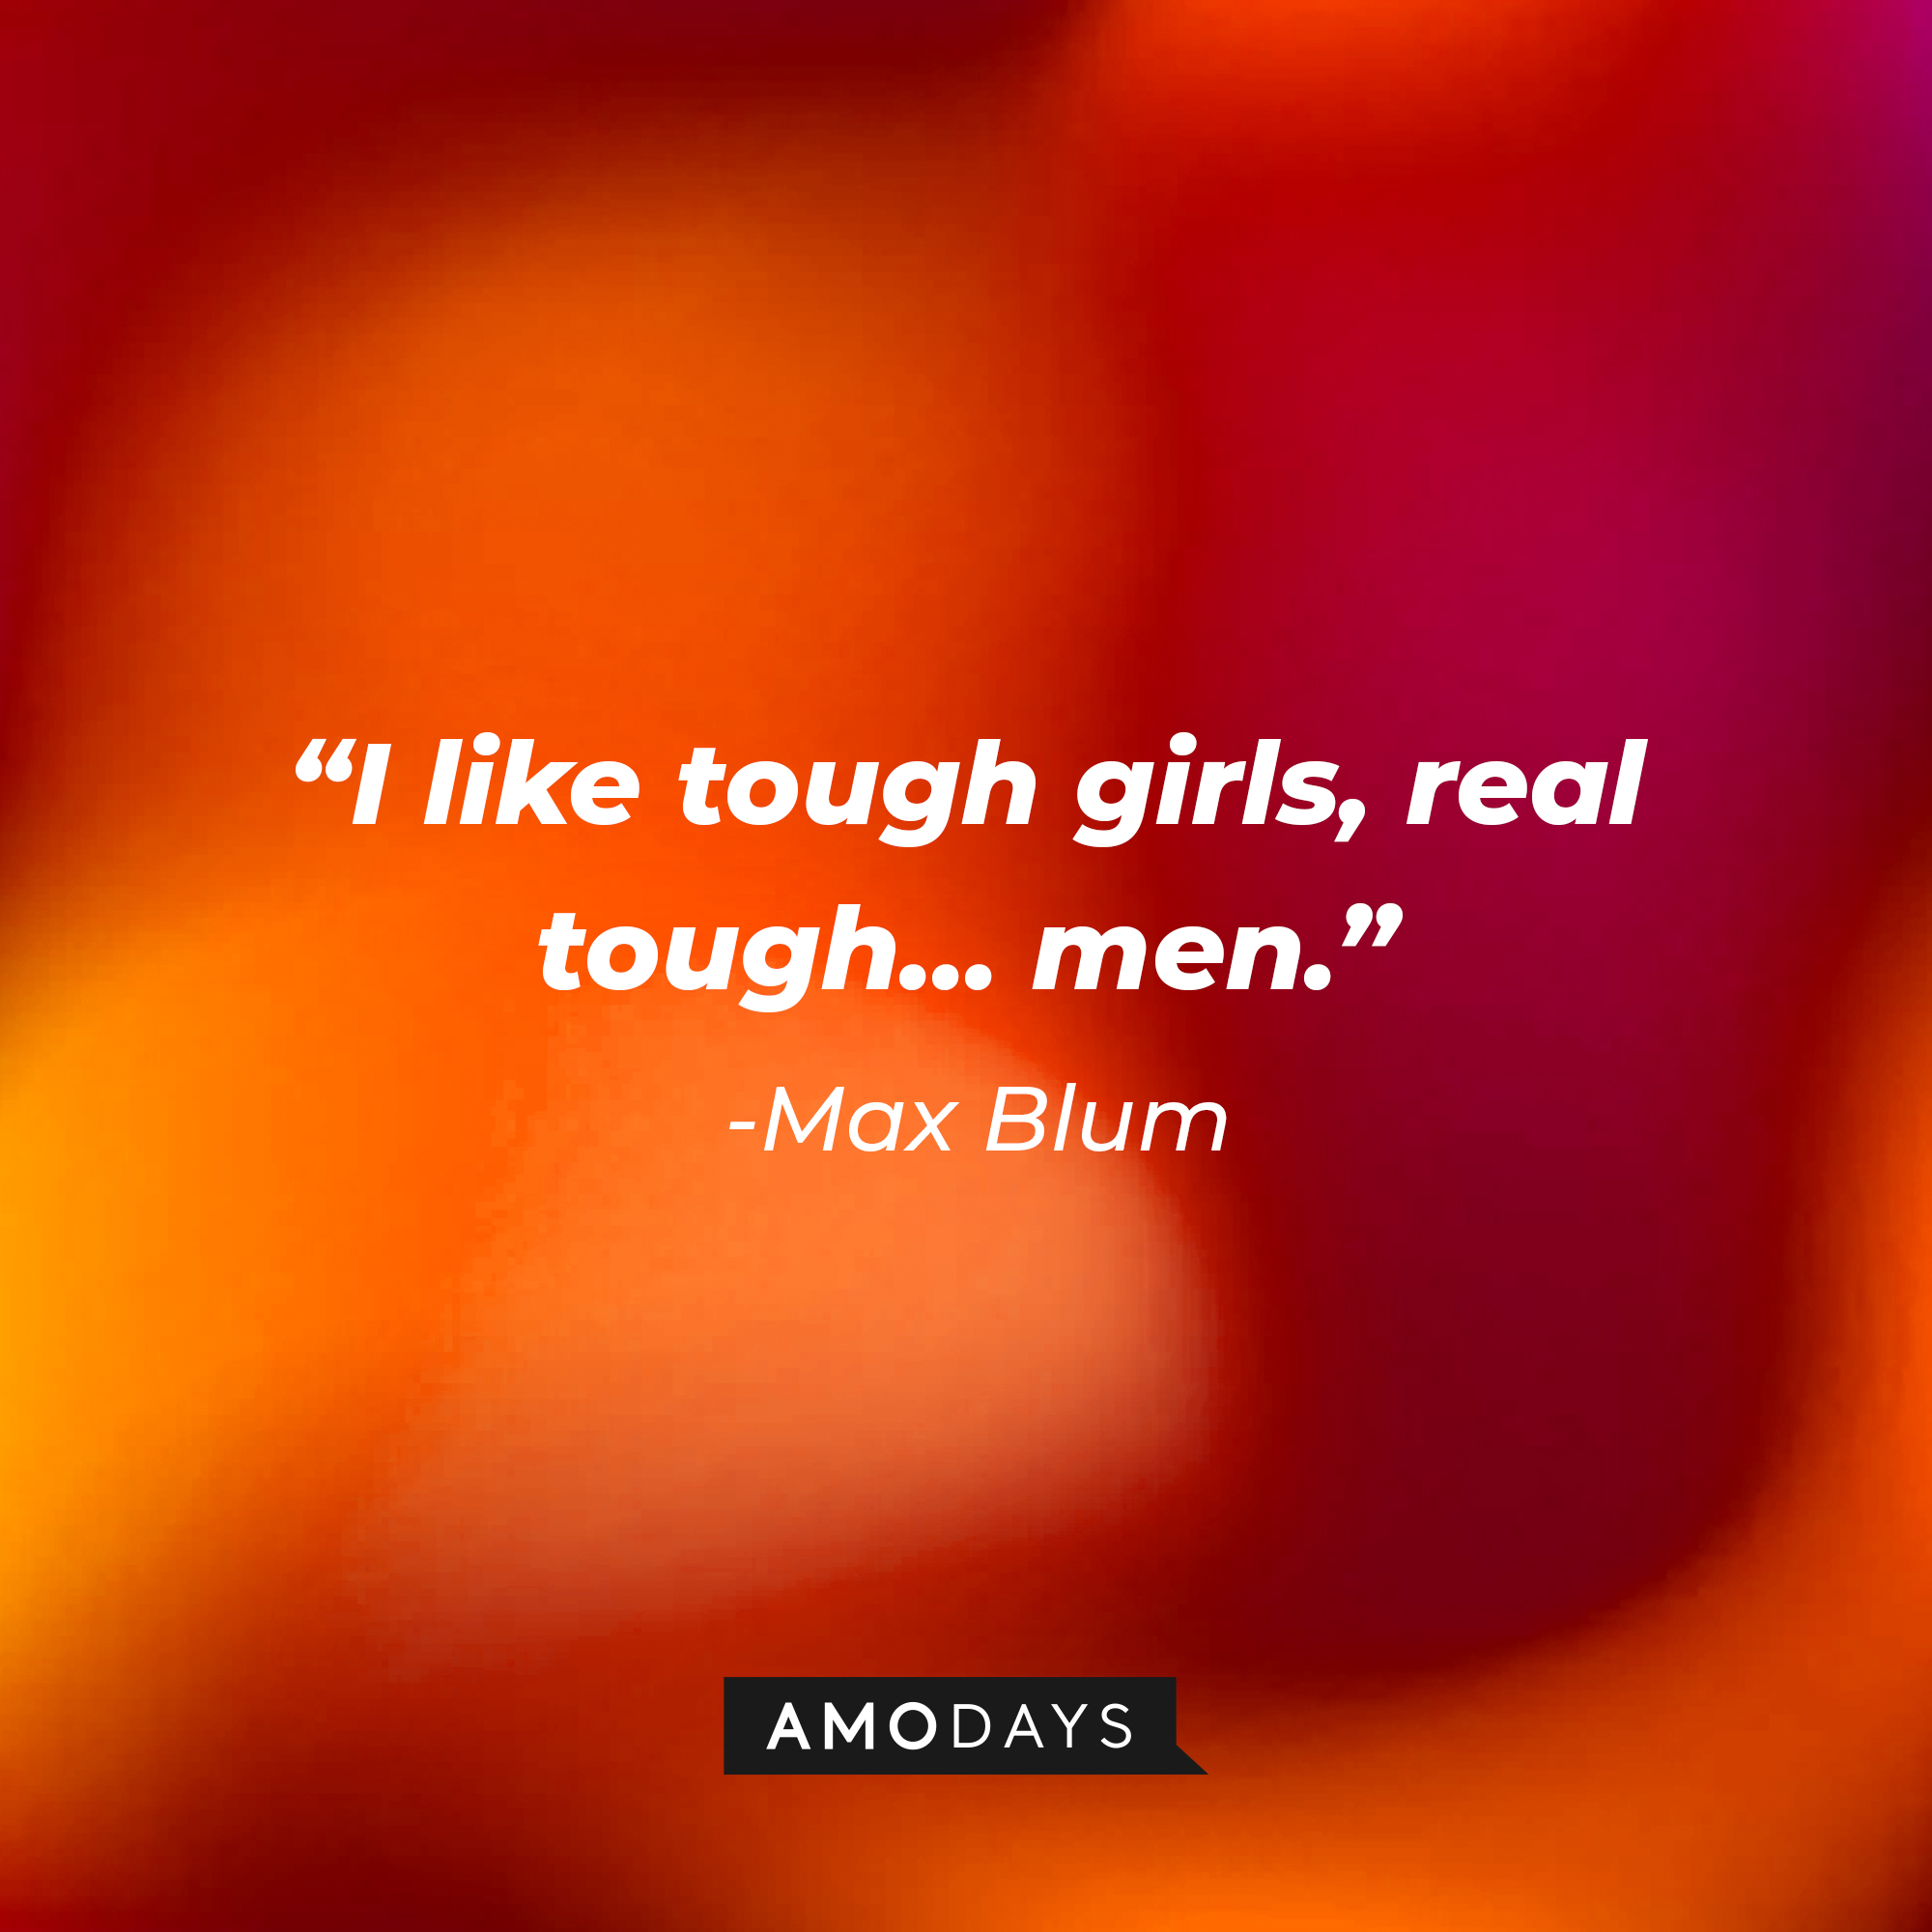 Max Blum's quote, "I like tough girls, real tough... men." | Source: Facebook/HappyEndings